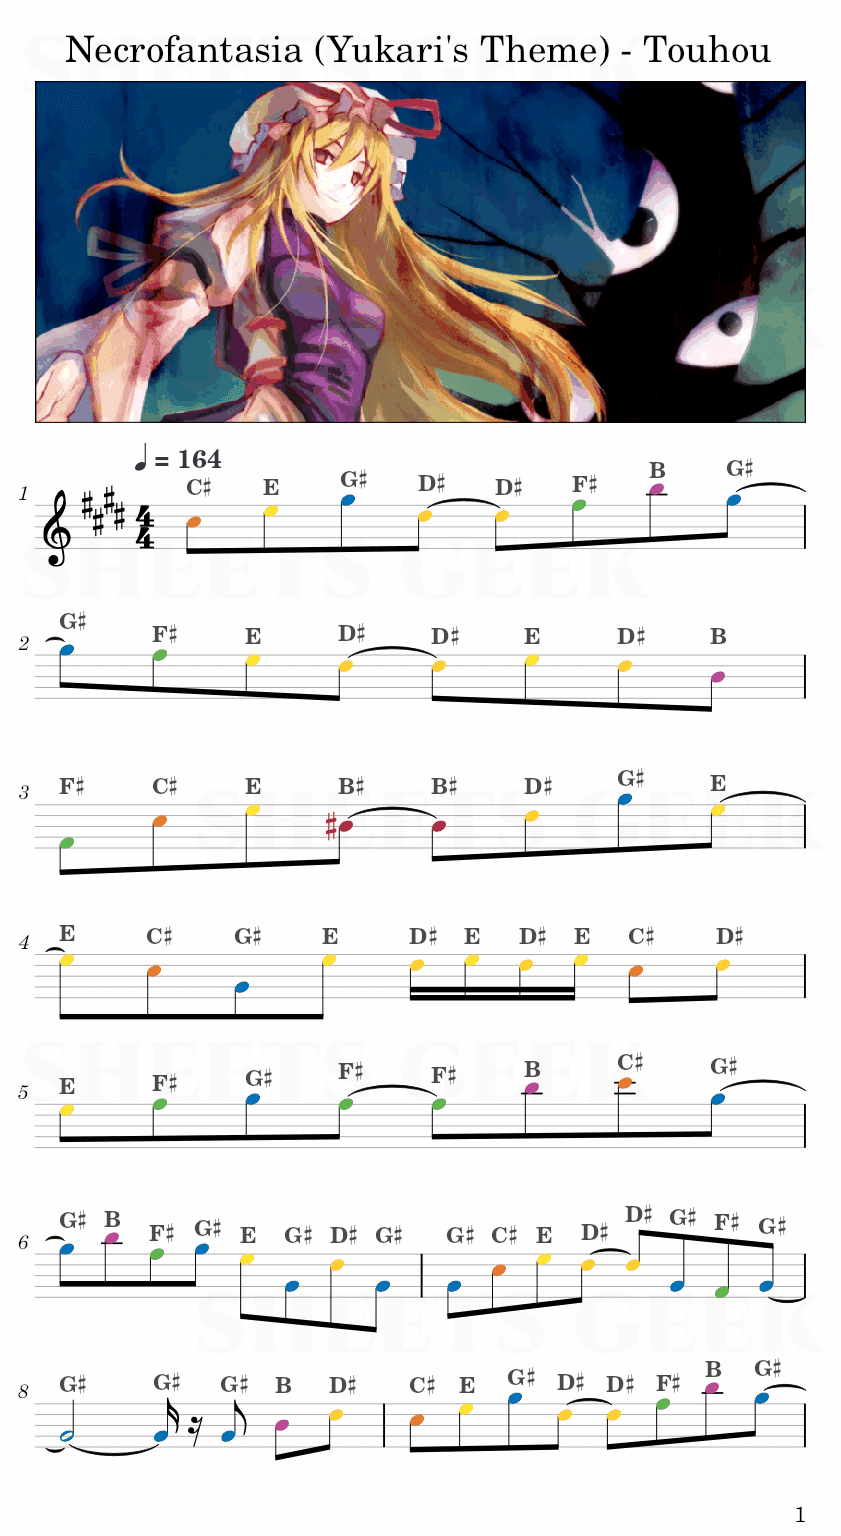 Necrofantasia (Yukari's Theme) - Touhou Easy Sheet Music Free for piano, keyboard, flute, violin, sax, cello page 1